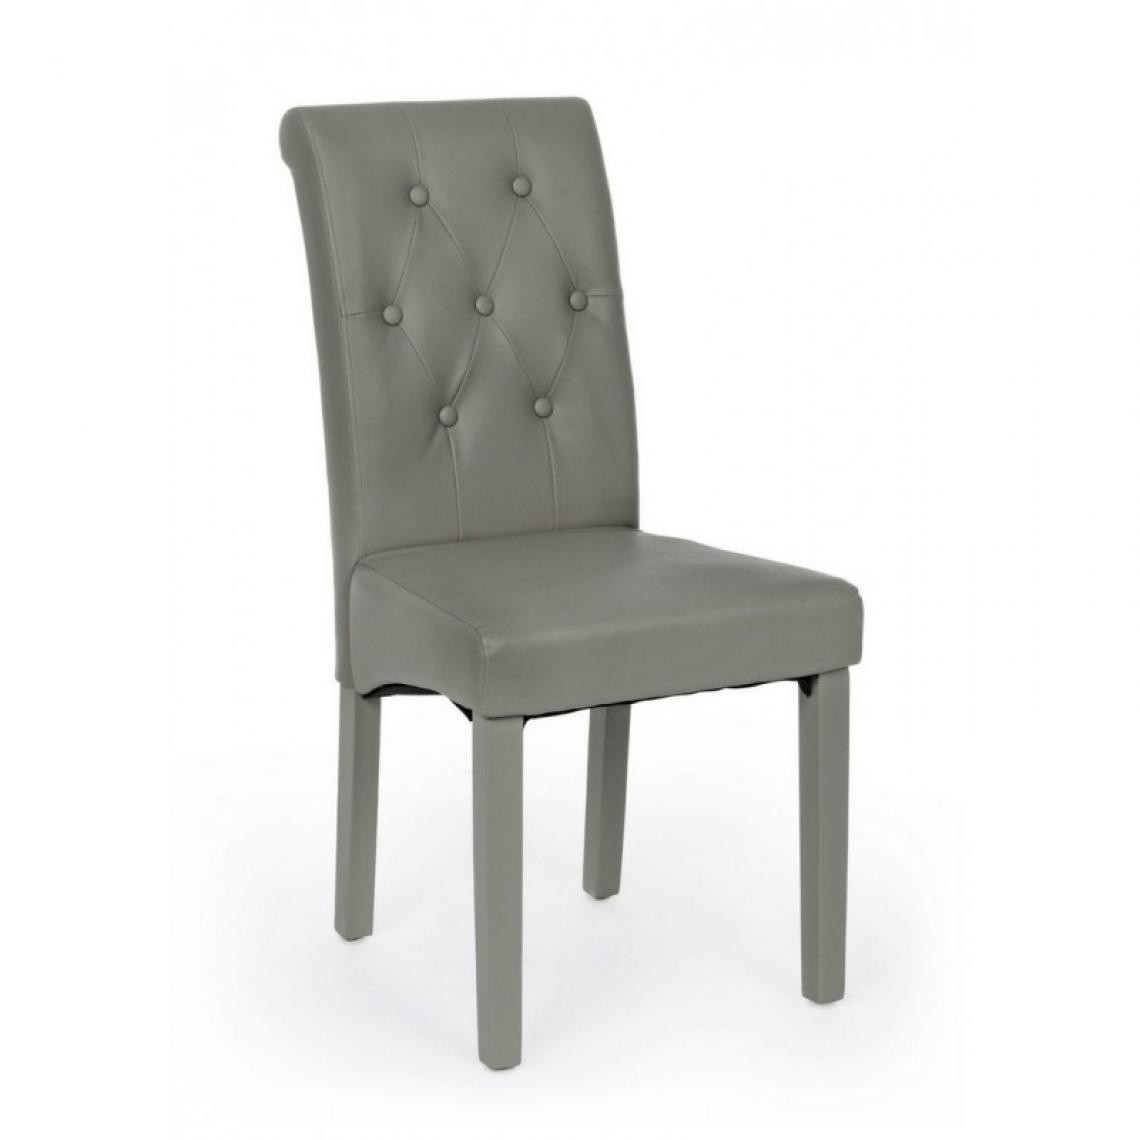 Webmarketpoint - Chaise Lily tourterelle avec pied assorti en éco-cuir - Chaises